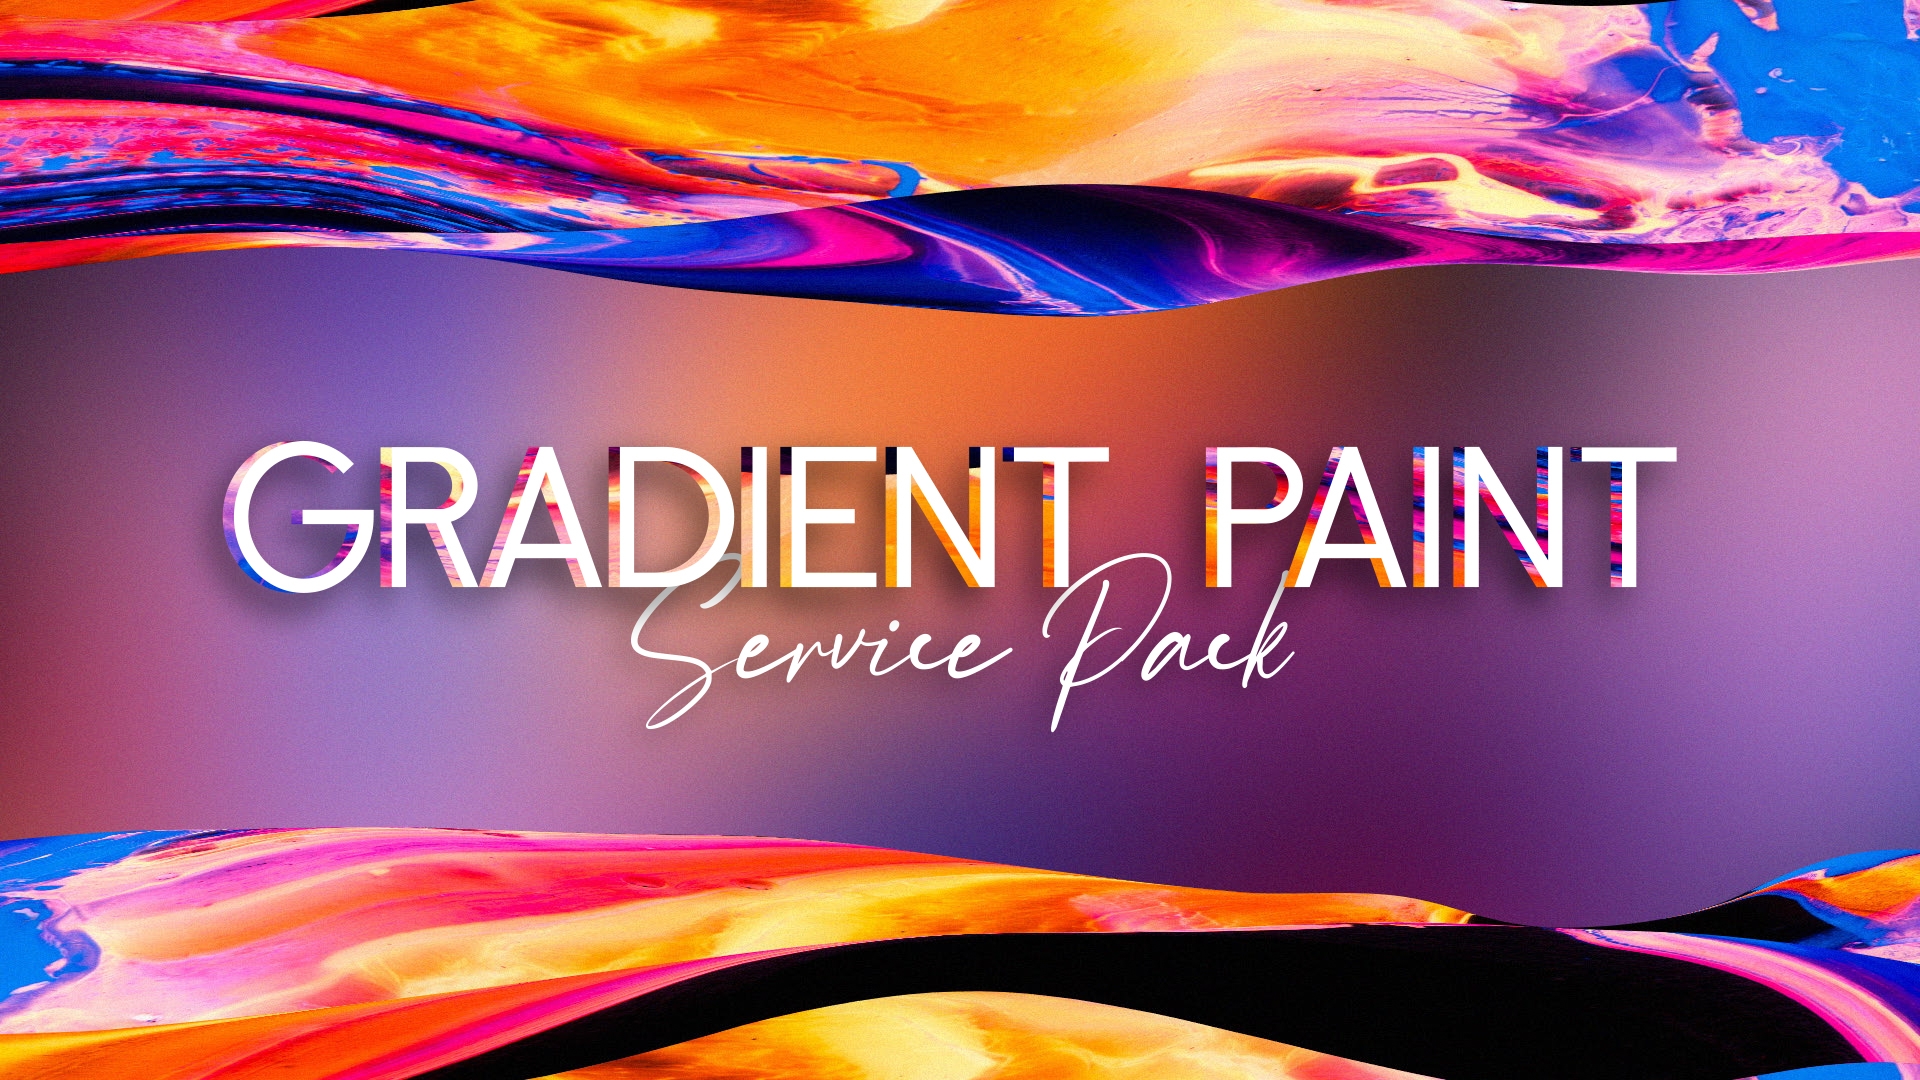 Gradient Paint Service Pack